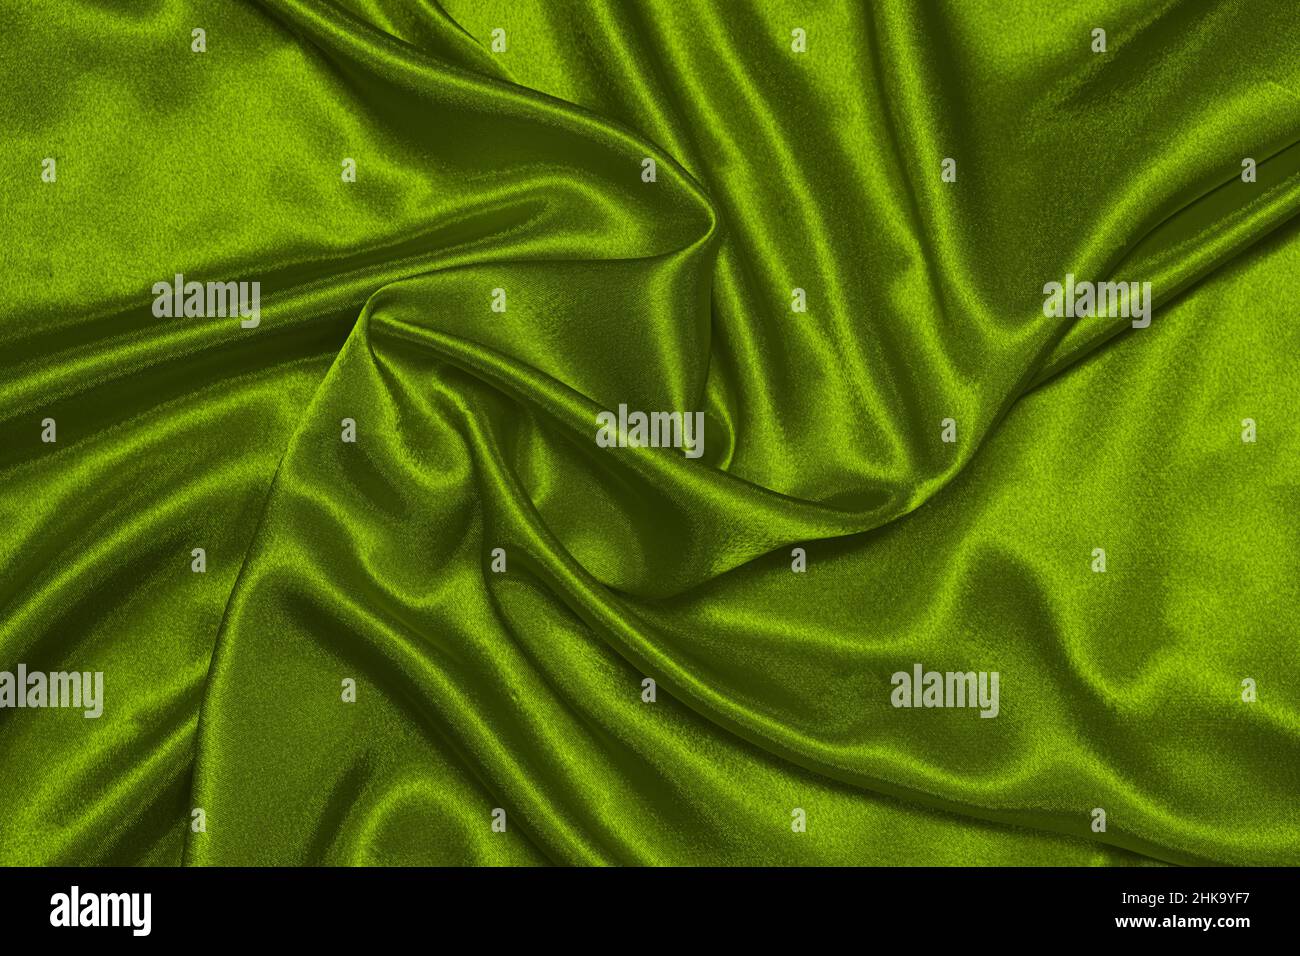 Trama in raso verde d'oliva grattugiato, bellissimo motivo, vista dall'alto. Foto Stock